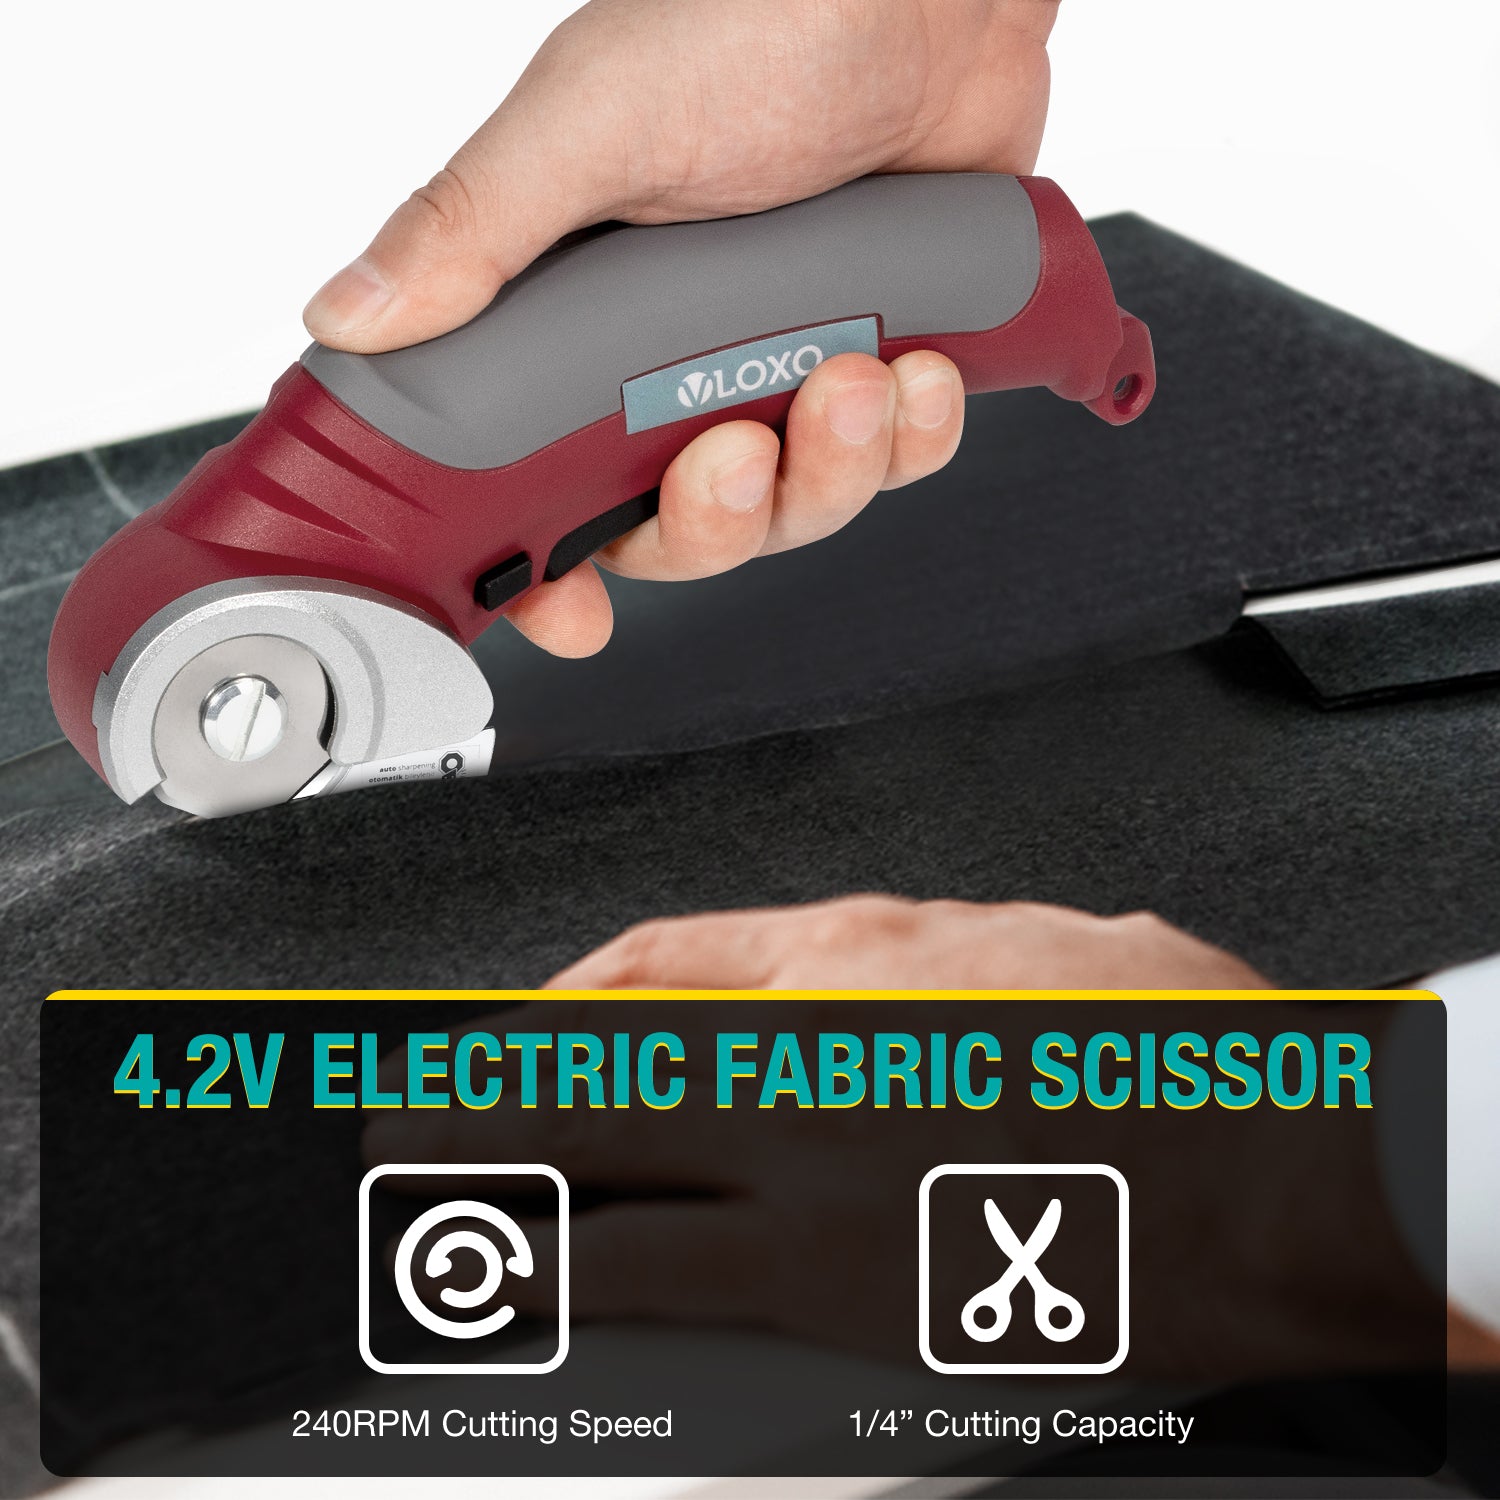 ZipSnip cordless electric scissors review: Cardboard, vanquished